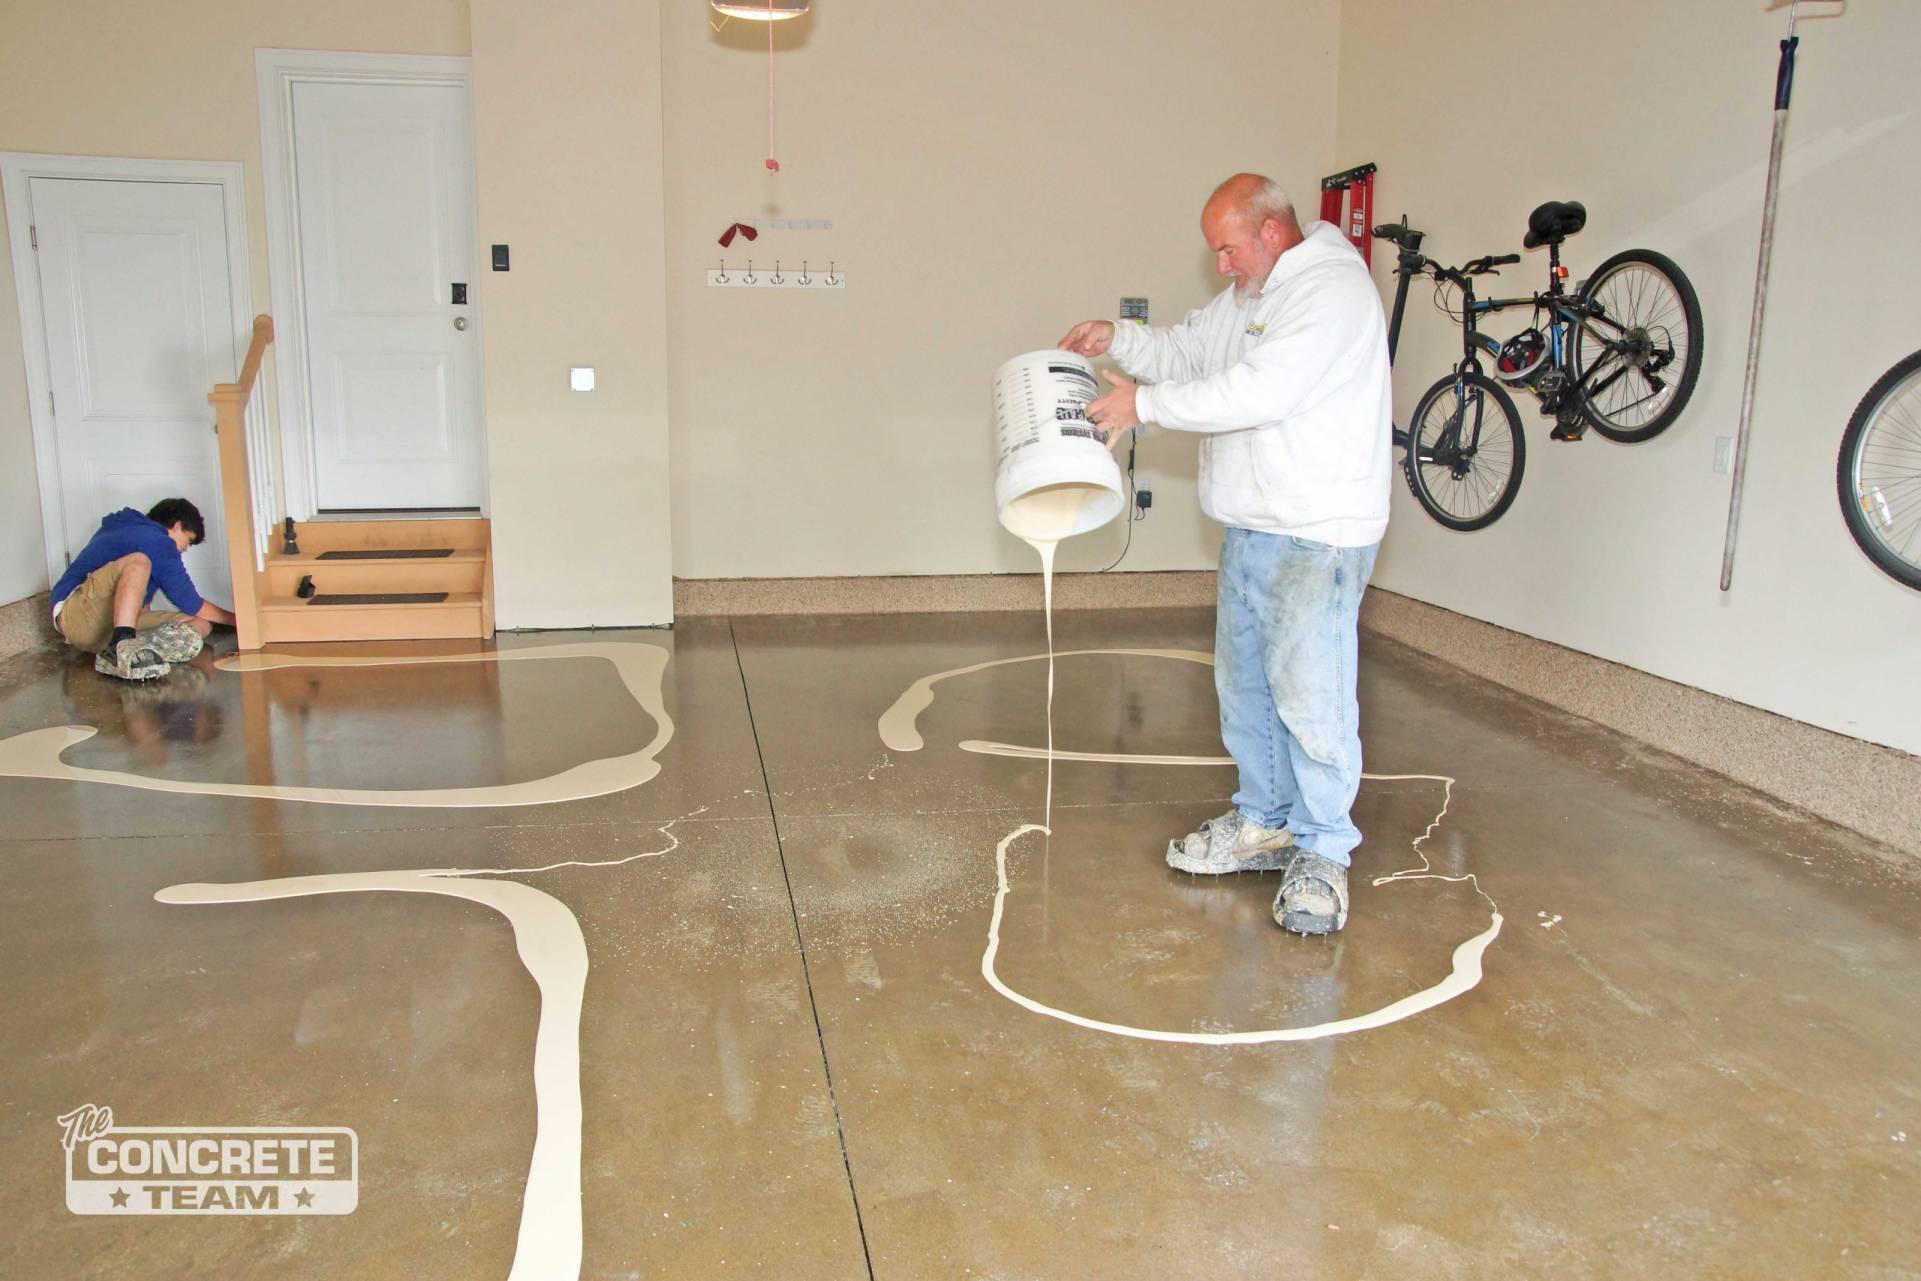 Two men working on a concrete garage floor installation